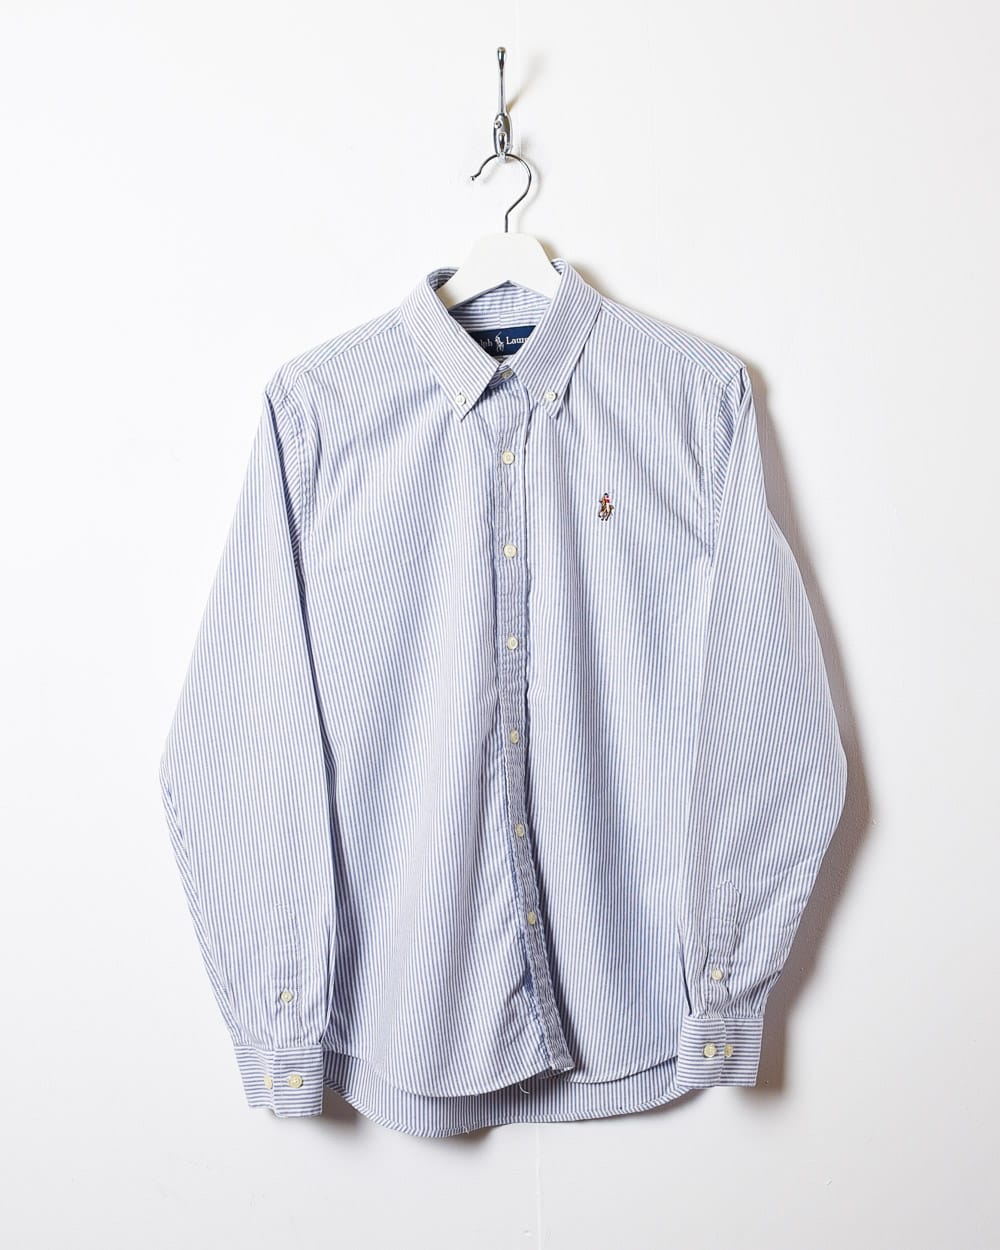 Blue Polo Ralph Lauren Striped Shirt - Medium